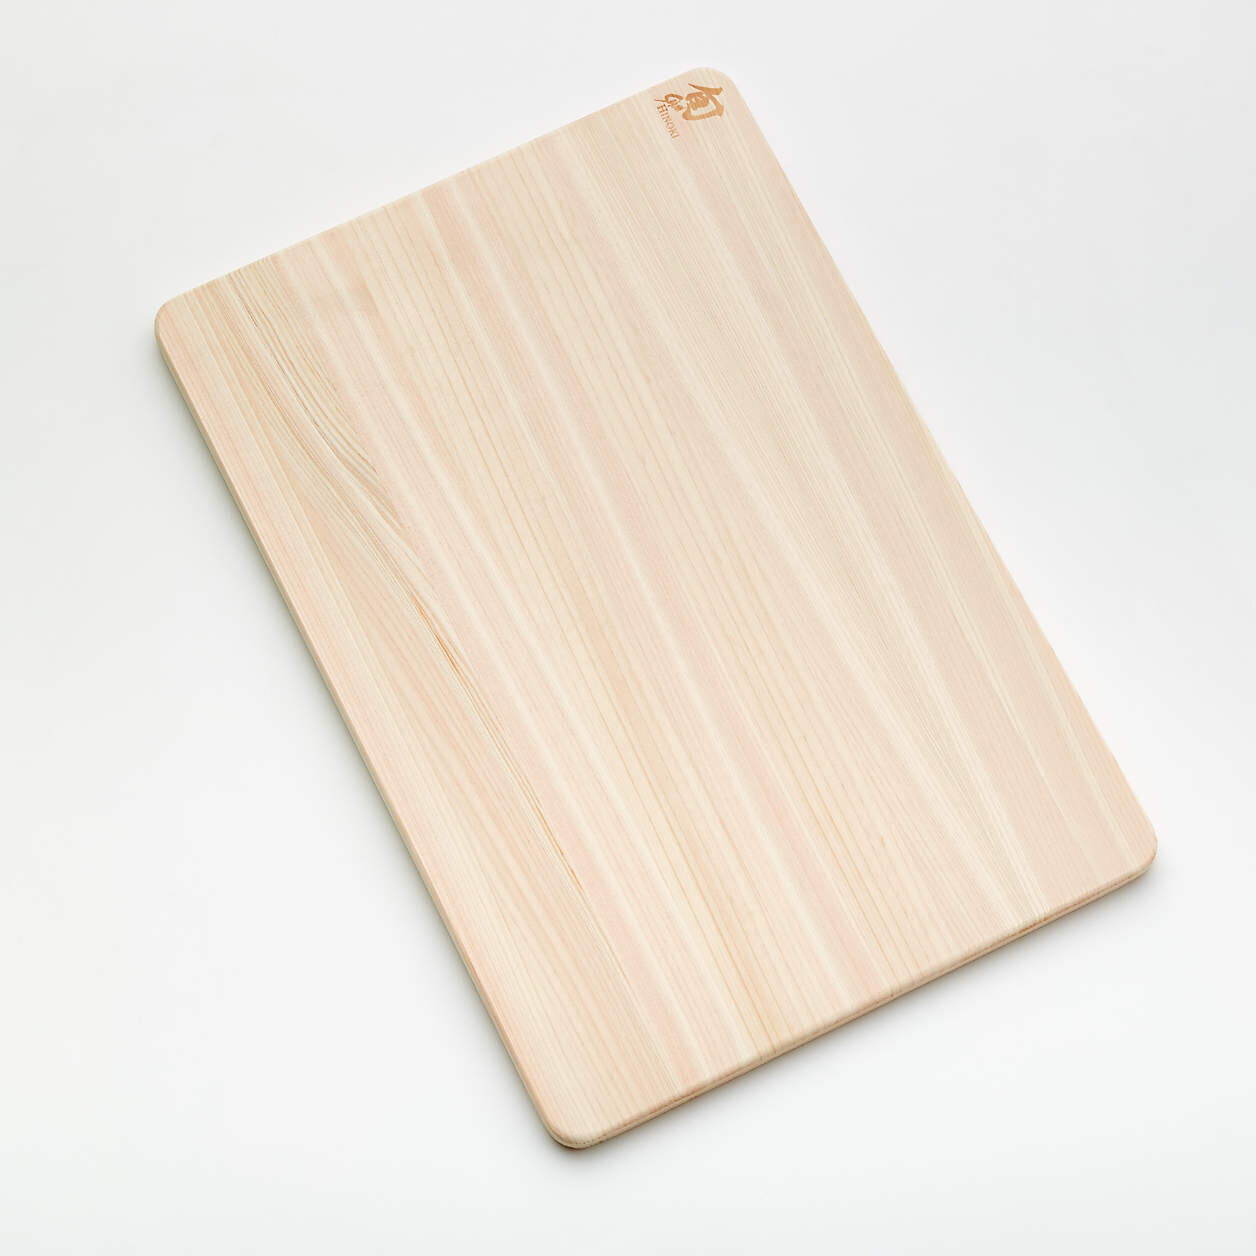 shun-hinoki-cutting-board-medium.jpg